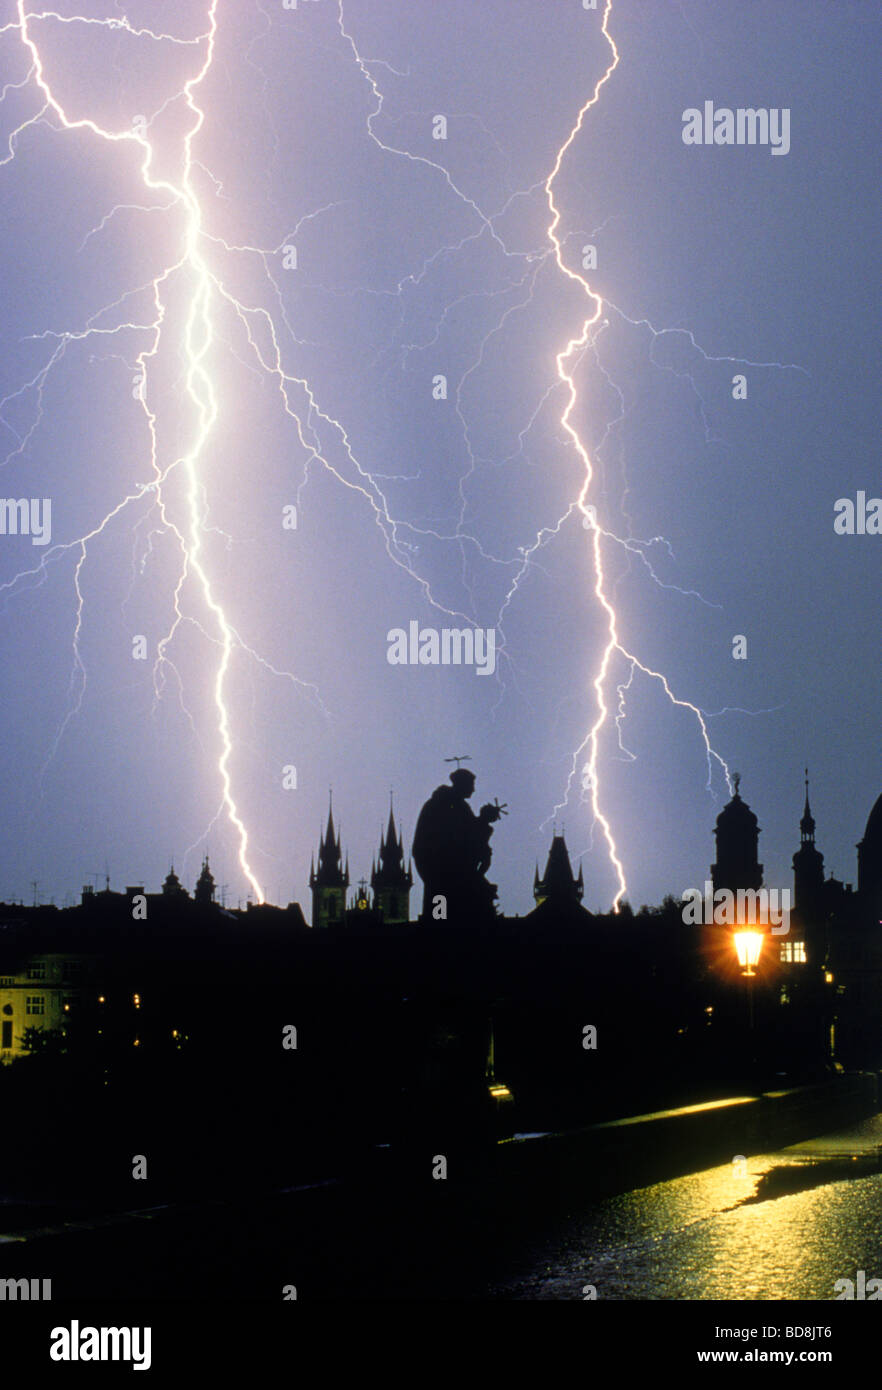 Gewitter über Karlsbrücke und barocke Statuen in Prag bei Nacht. Ein reelles Bild.  NICHT Foto eingekauft. Stockfoto